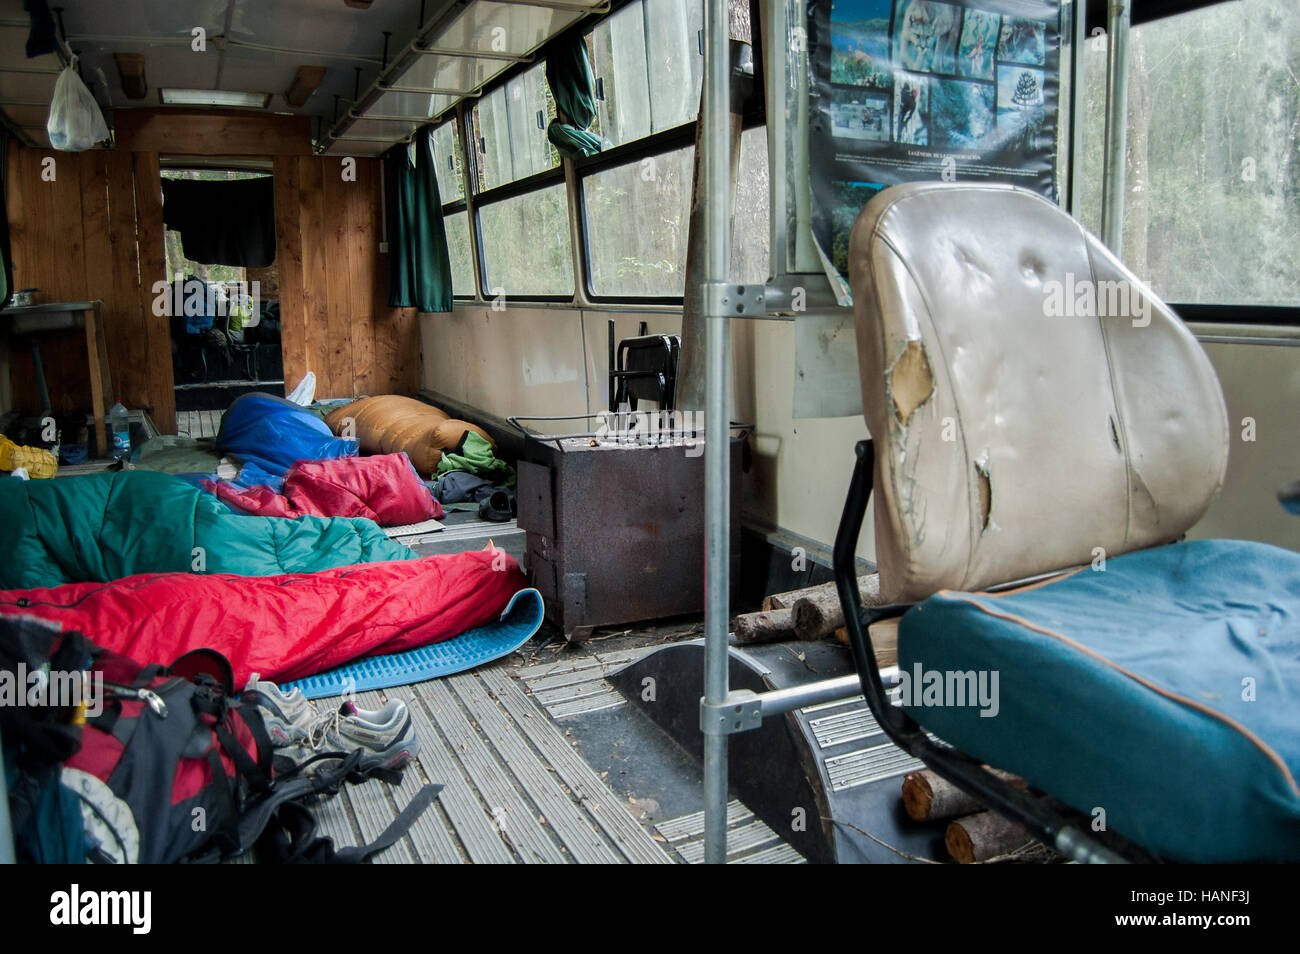 Un grupo de viajeros dormir dentro de un autobús transformado en un hostal Foto de stock